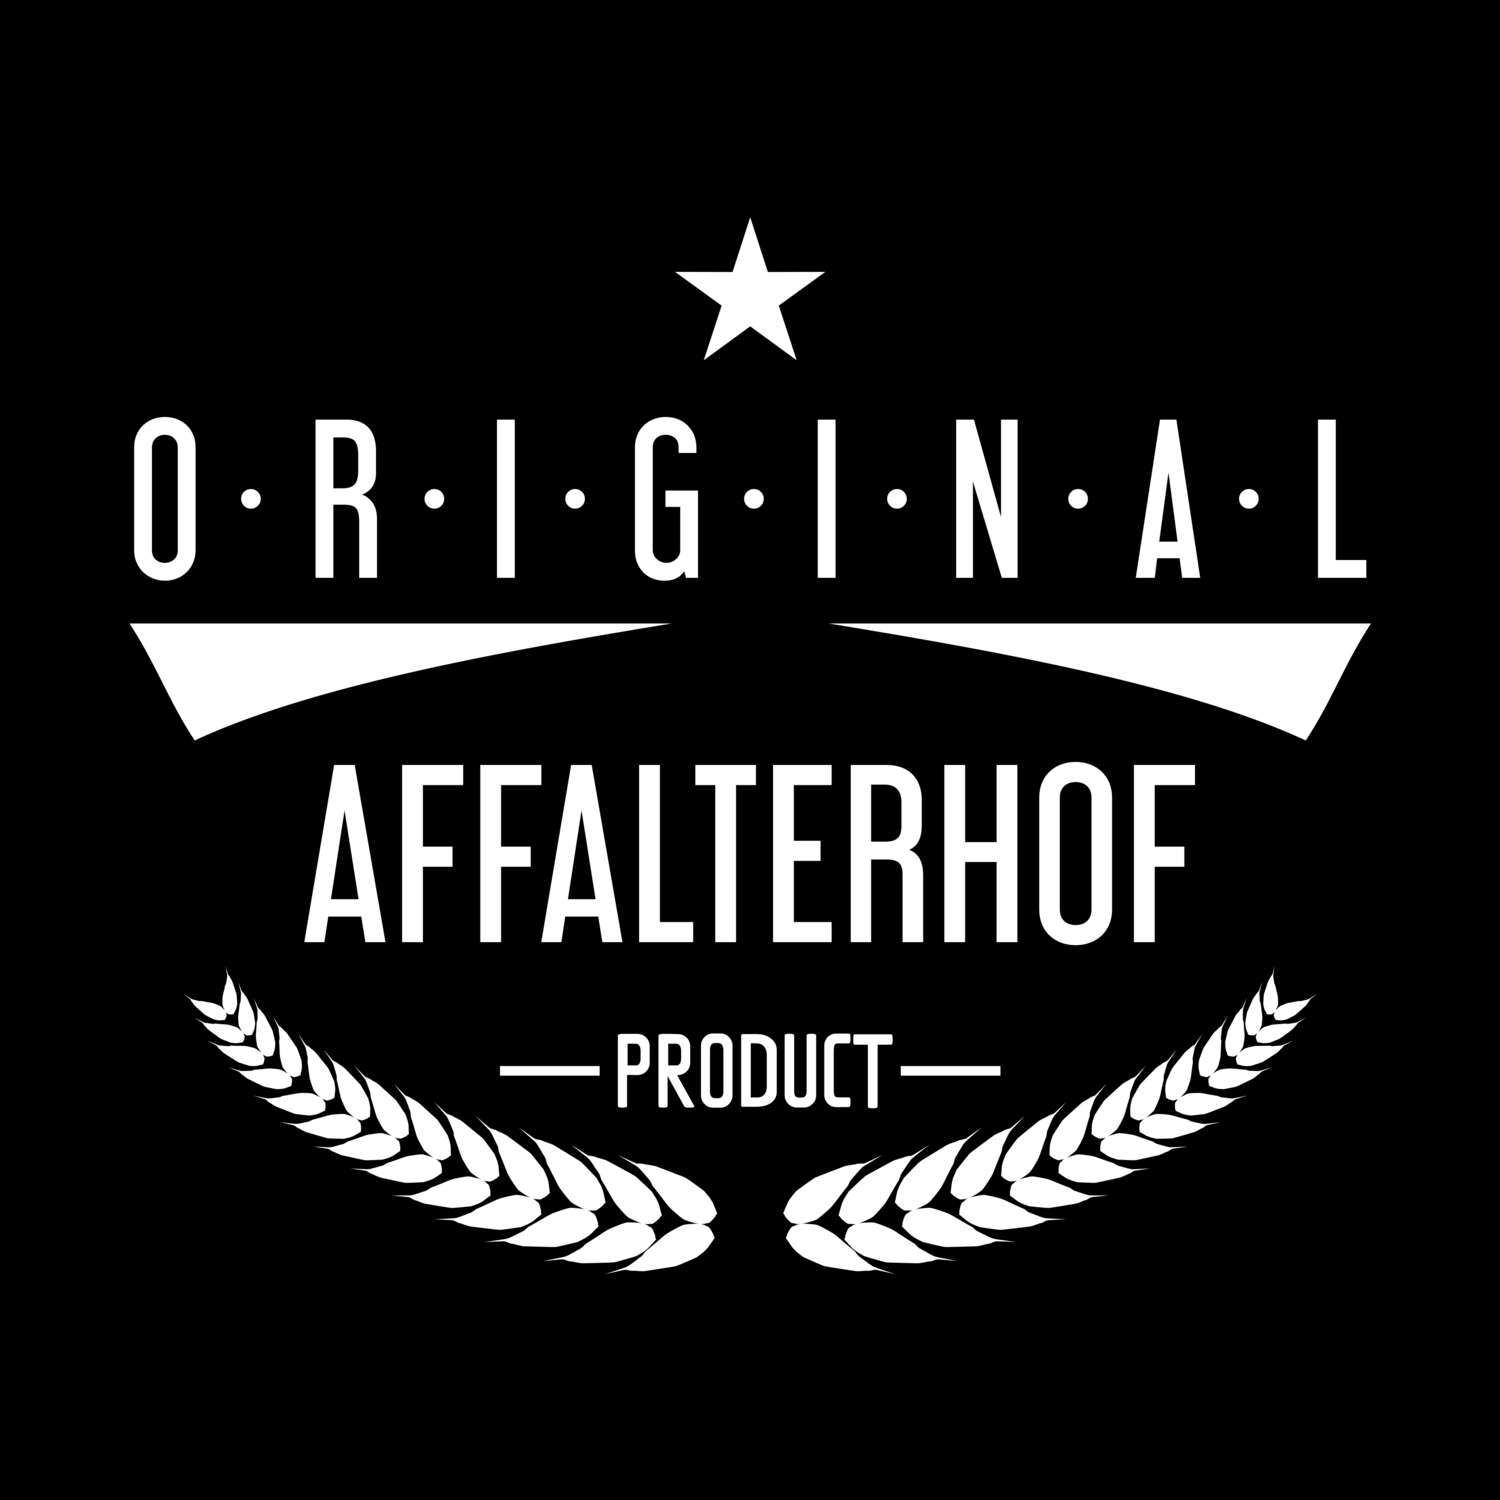 Affalterhof T-Shirt »Original Product«